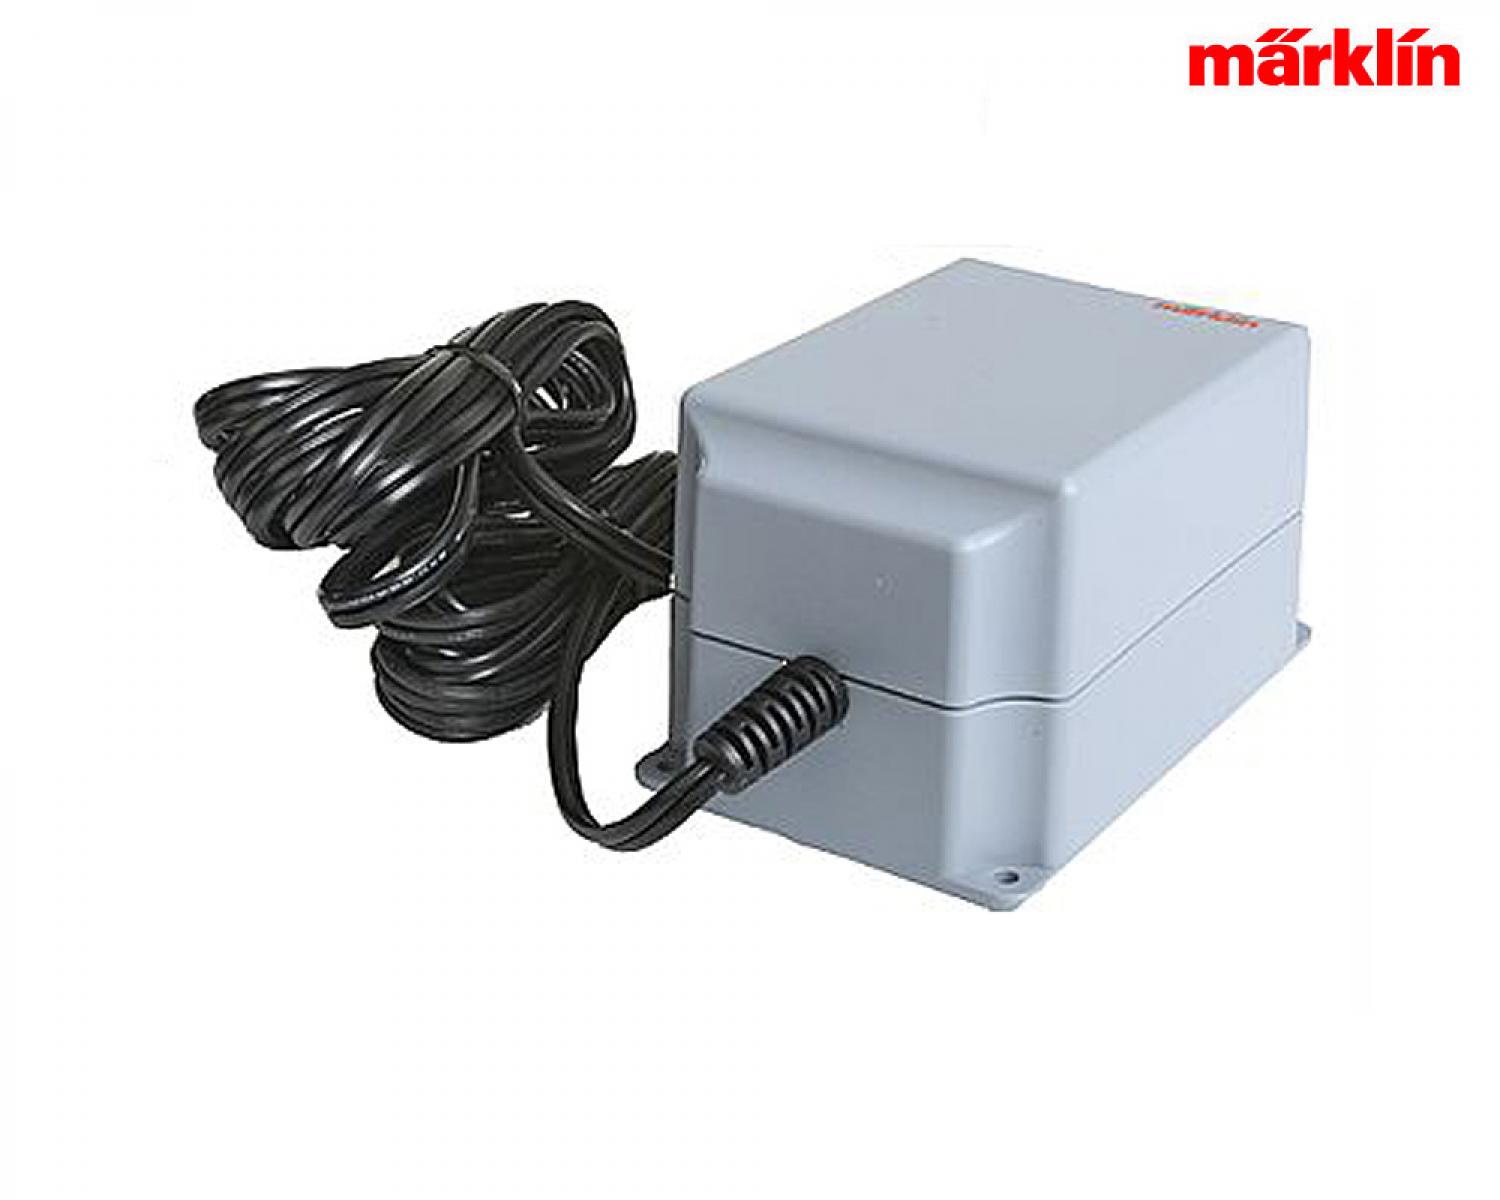 Märklin 60065 50VA Switched Mode Power Pack, 120 Volts